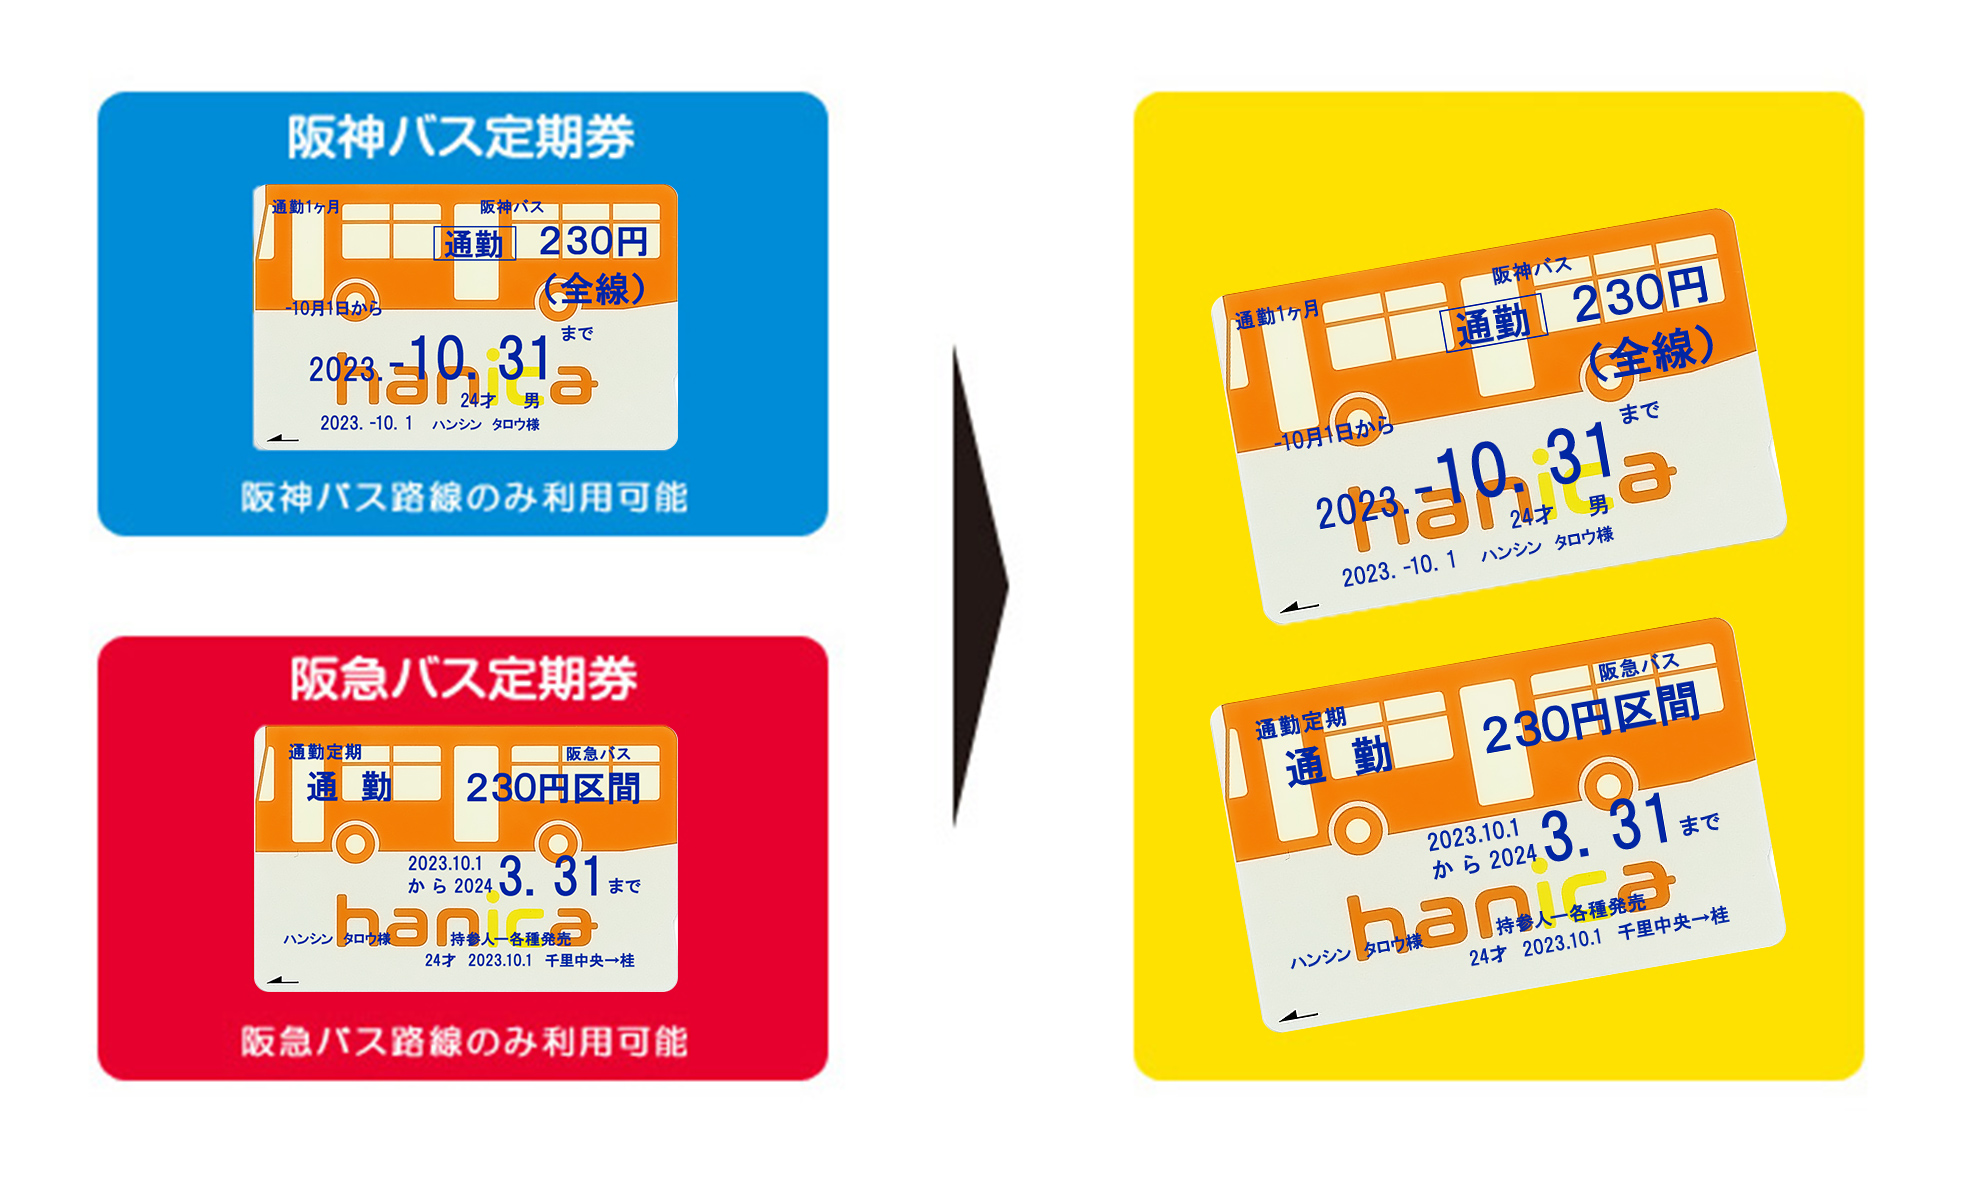 阪急バスとの定期券相互利用サービスについて